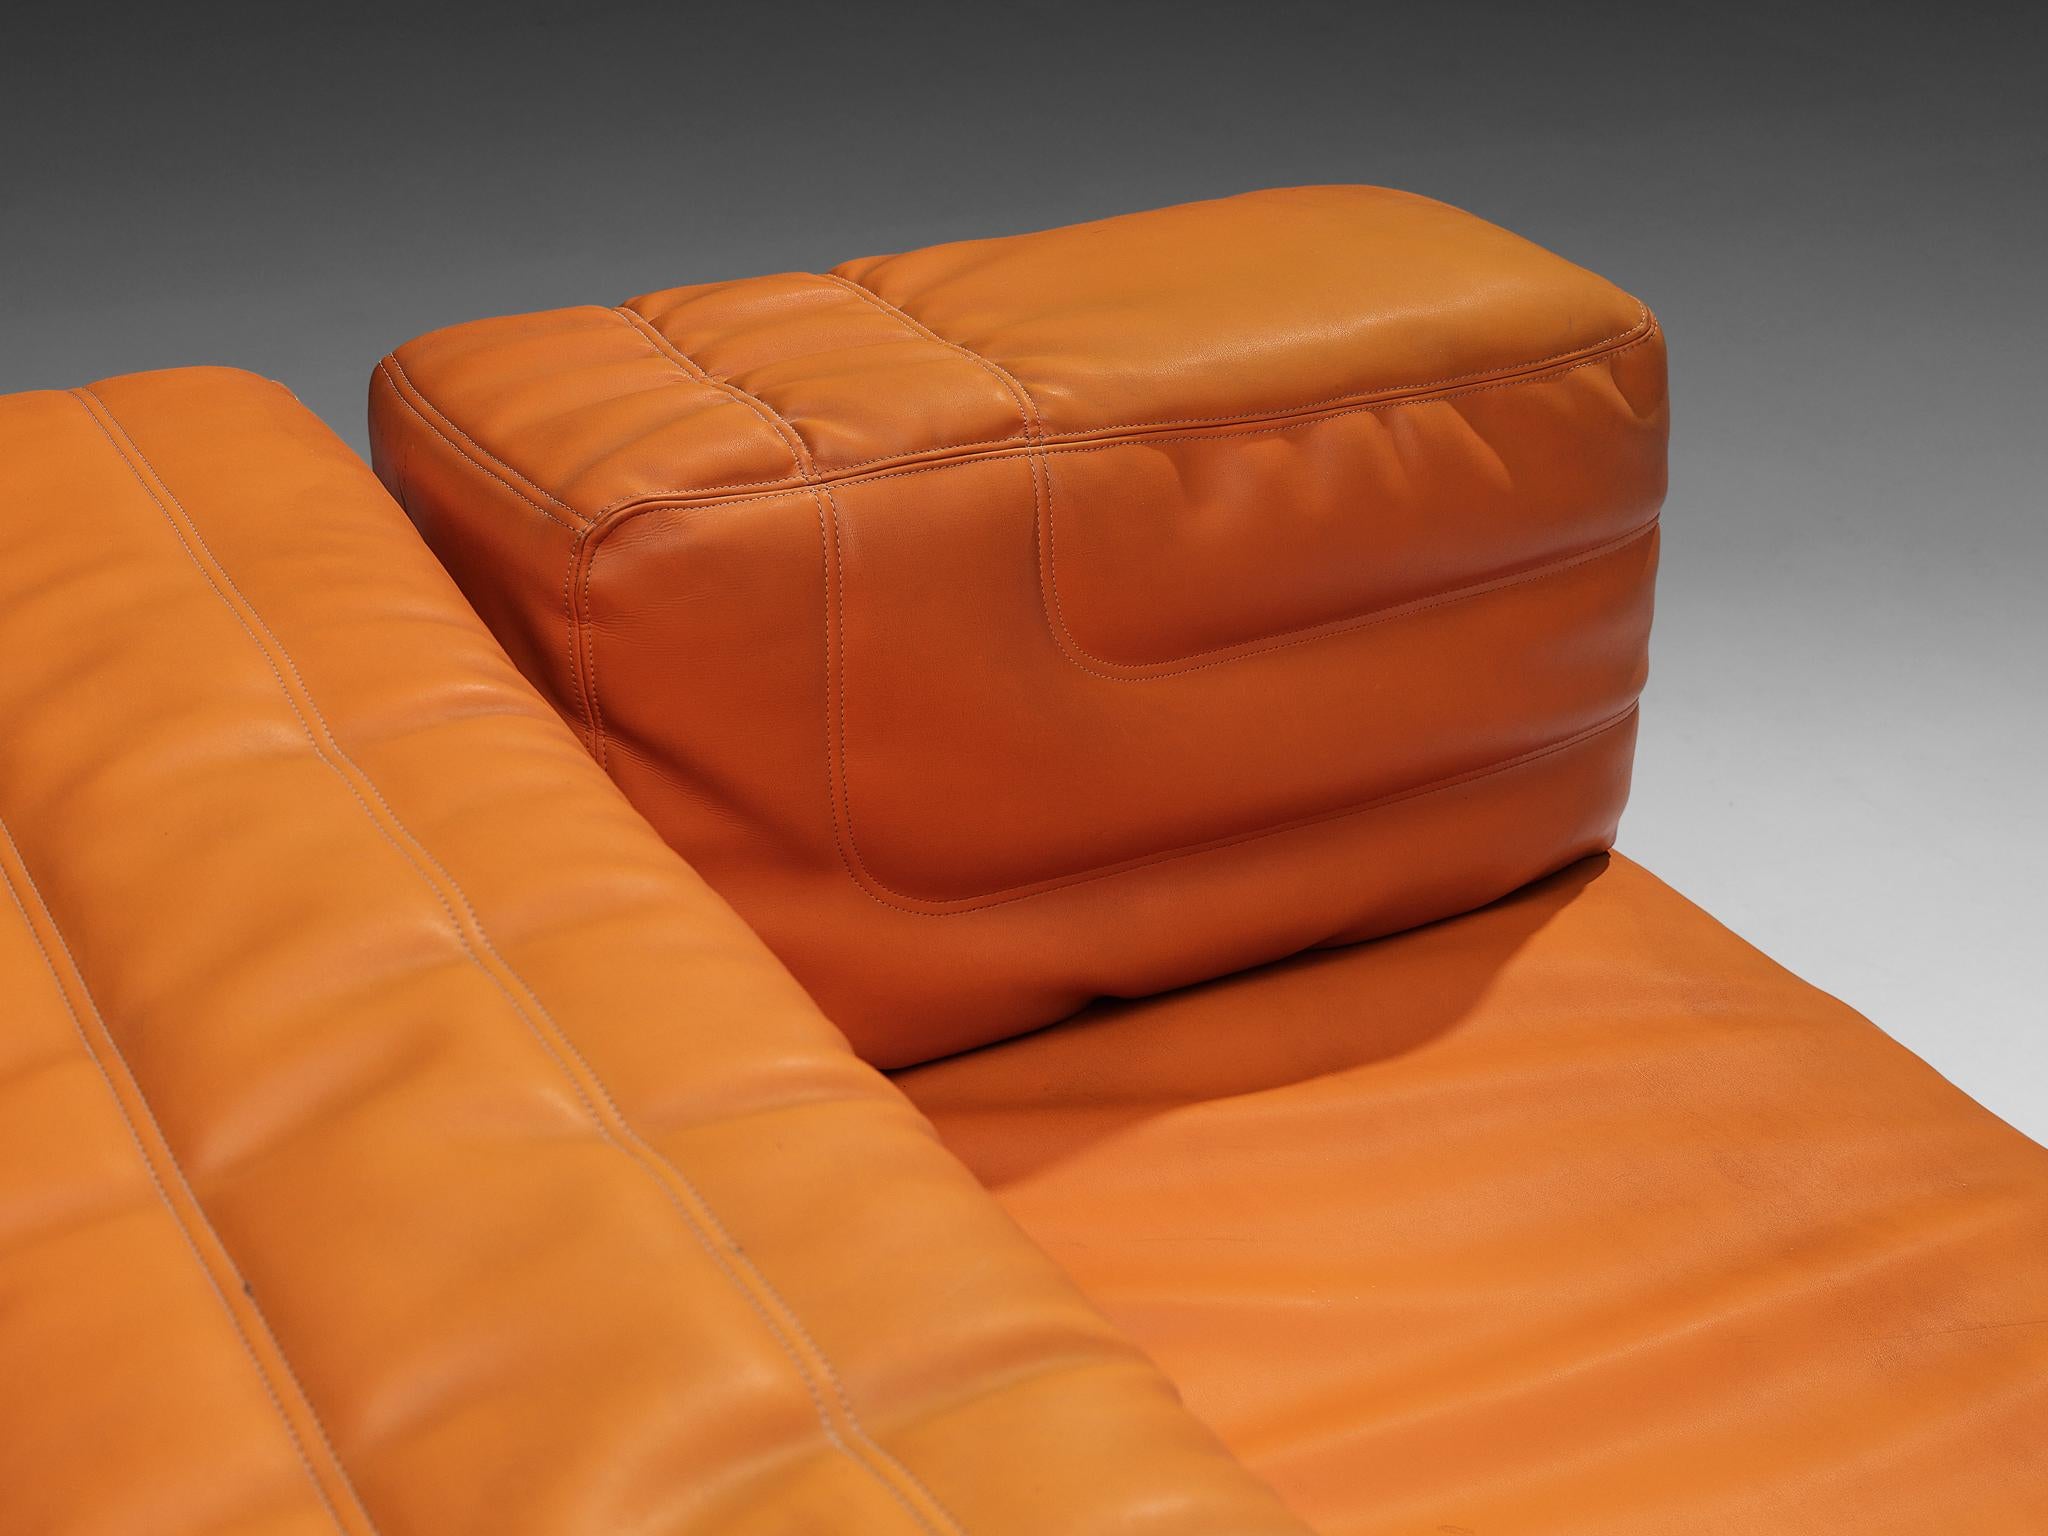 1970s orange couch